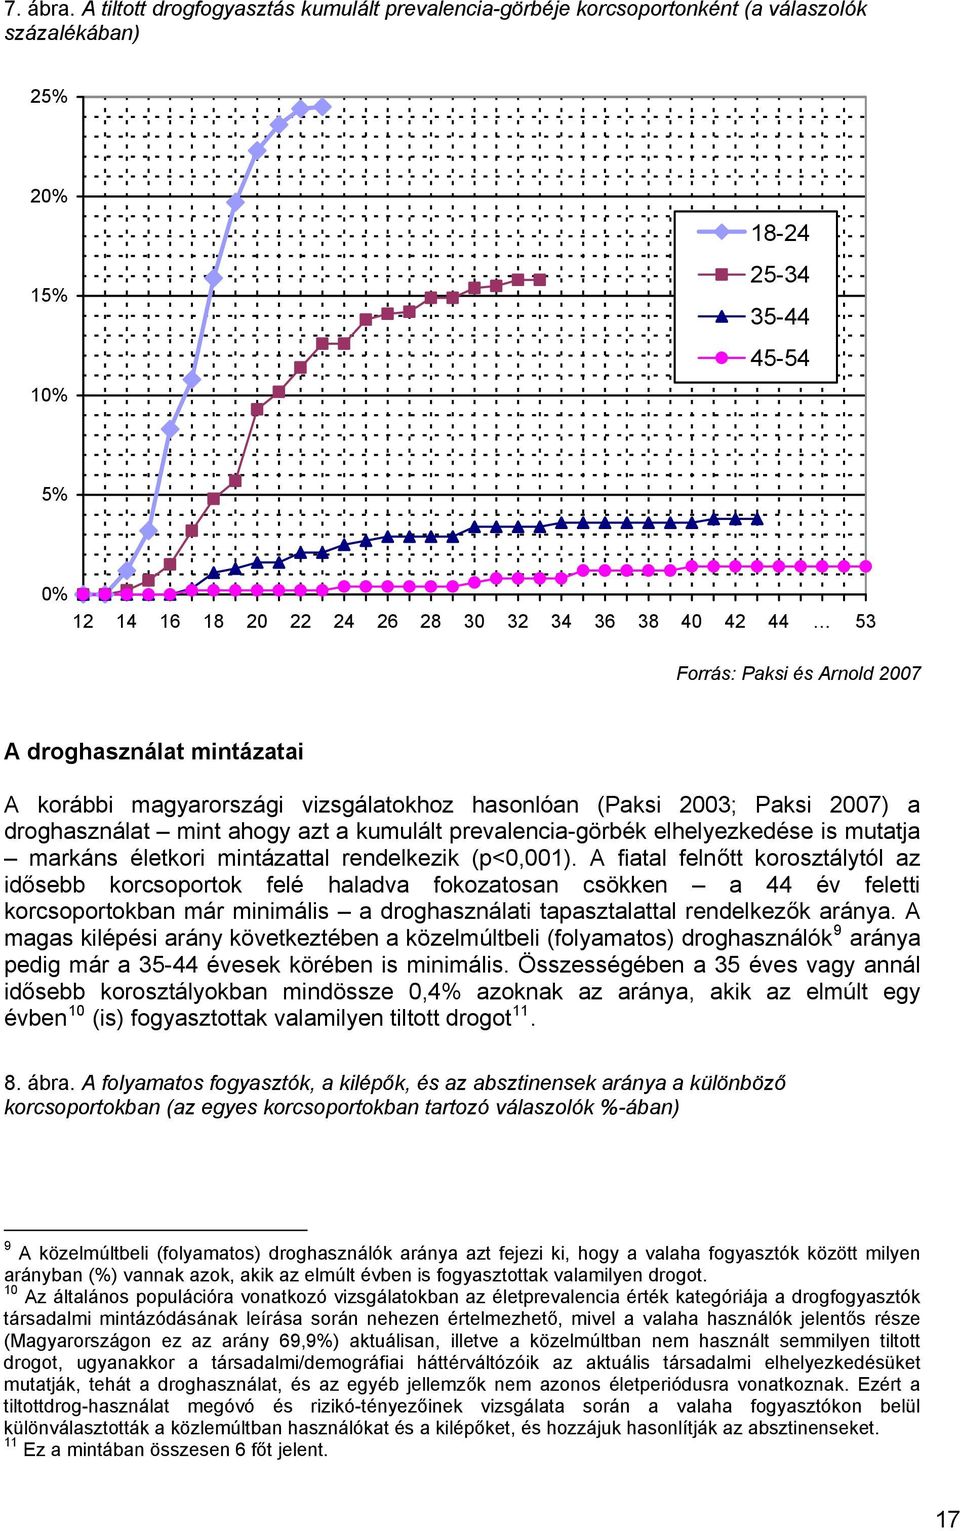 Forrás: Paksi és Arnold 2007 A droghasználat mintázatai A korábbi magyarországi vizsgálatokhoz hasonlóan (Paksi 2003; Paksi 2007) a droghasználat mint ahogy azt a kumulált prevalencia-görbék